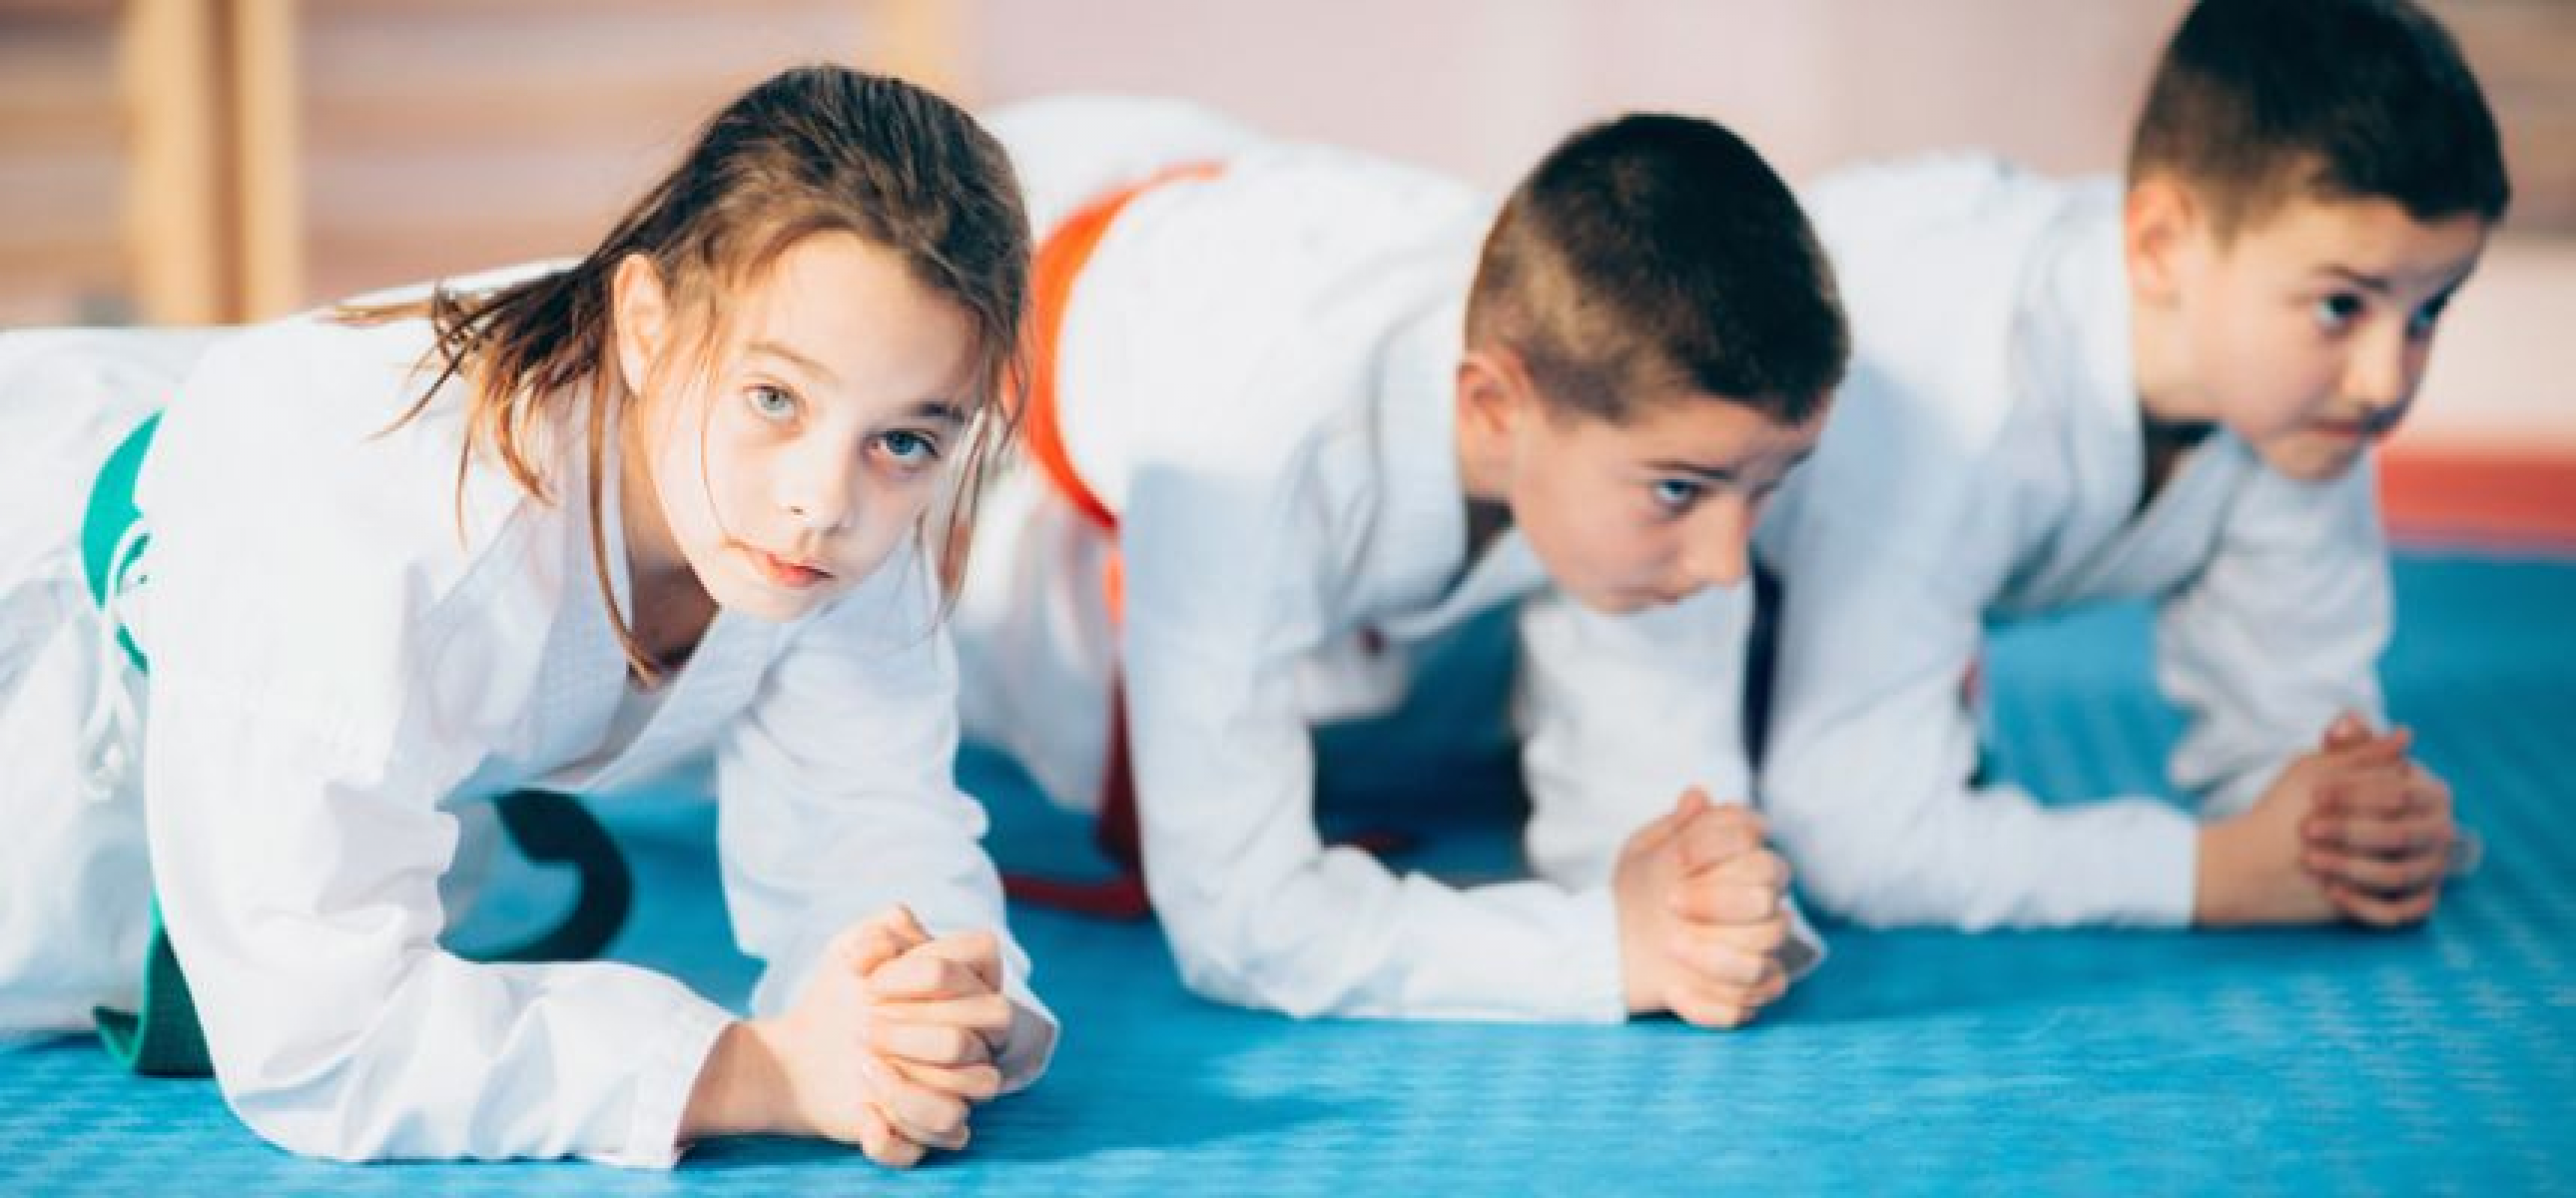 Deutscher Städte- und Gemeindebund und Deutscher Karate Verband gemeinsam für eine offene und vielfältige Gesellschaft